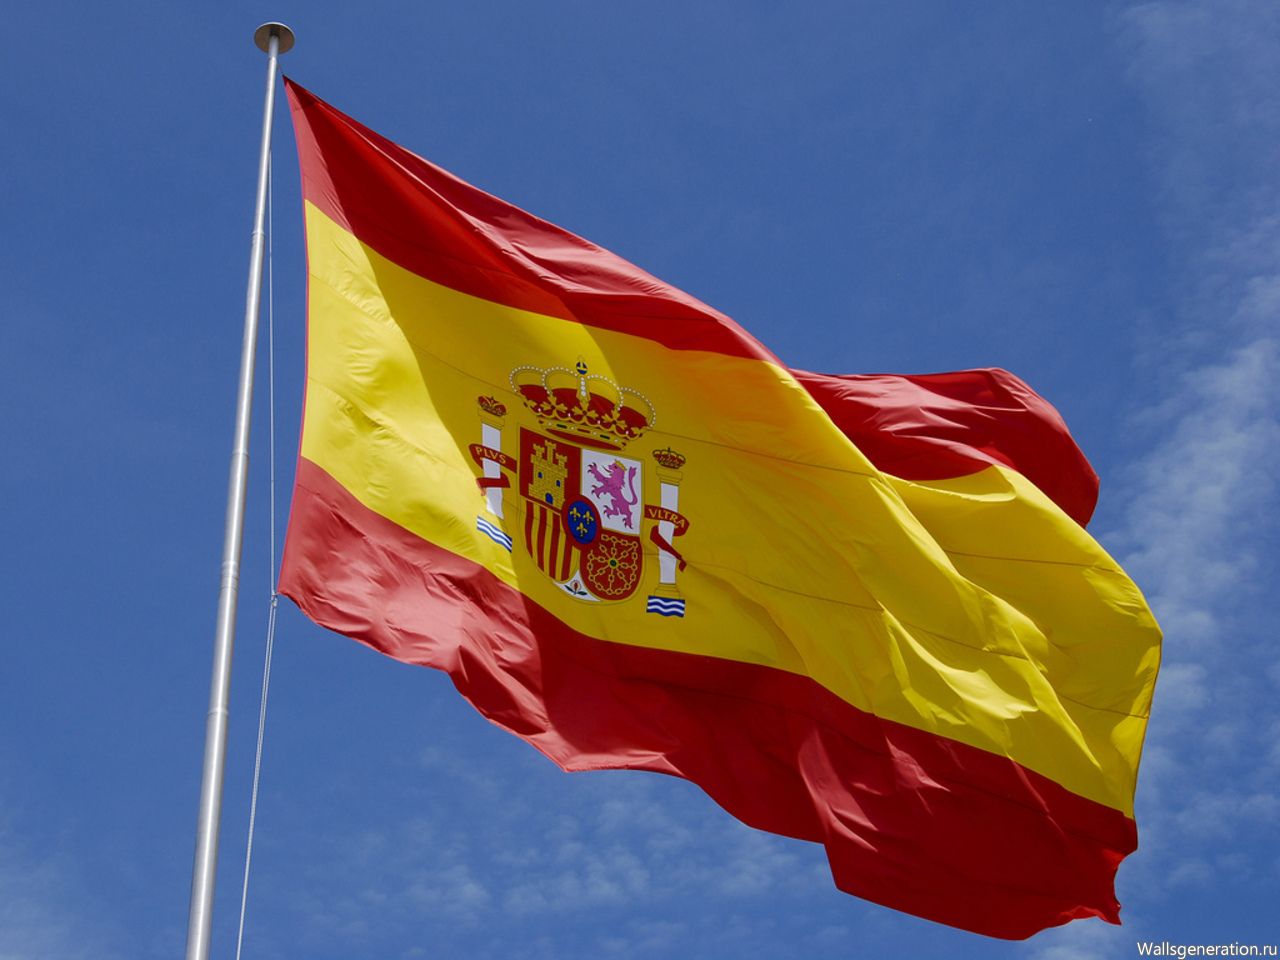 СМИ: испанский суд отказался признавать жительницу Бельгии дочерью короля